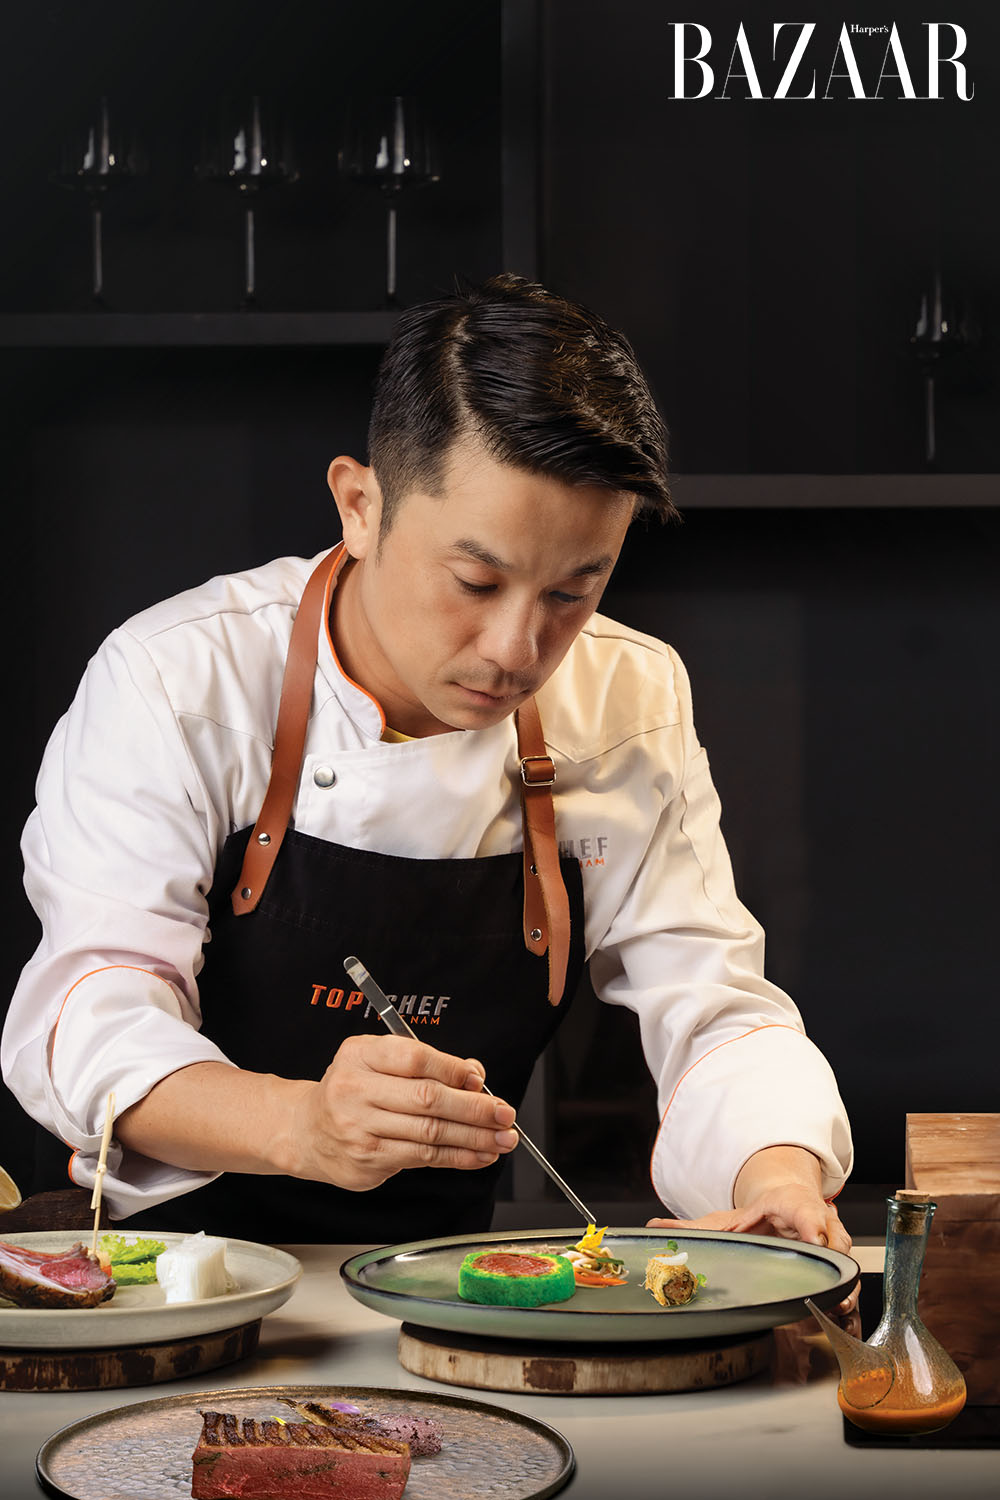 Harper's Bazaar_Chef Đinh Sơn Trúc nấu ăn bằng cả trái tim_02